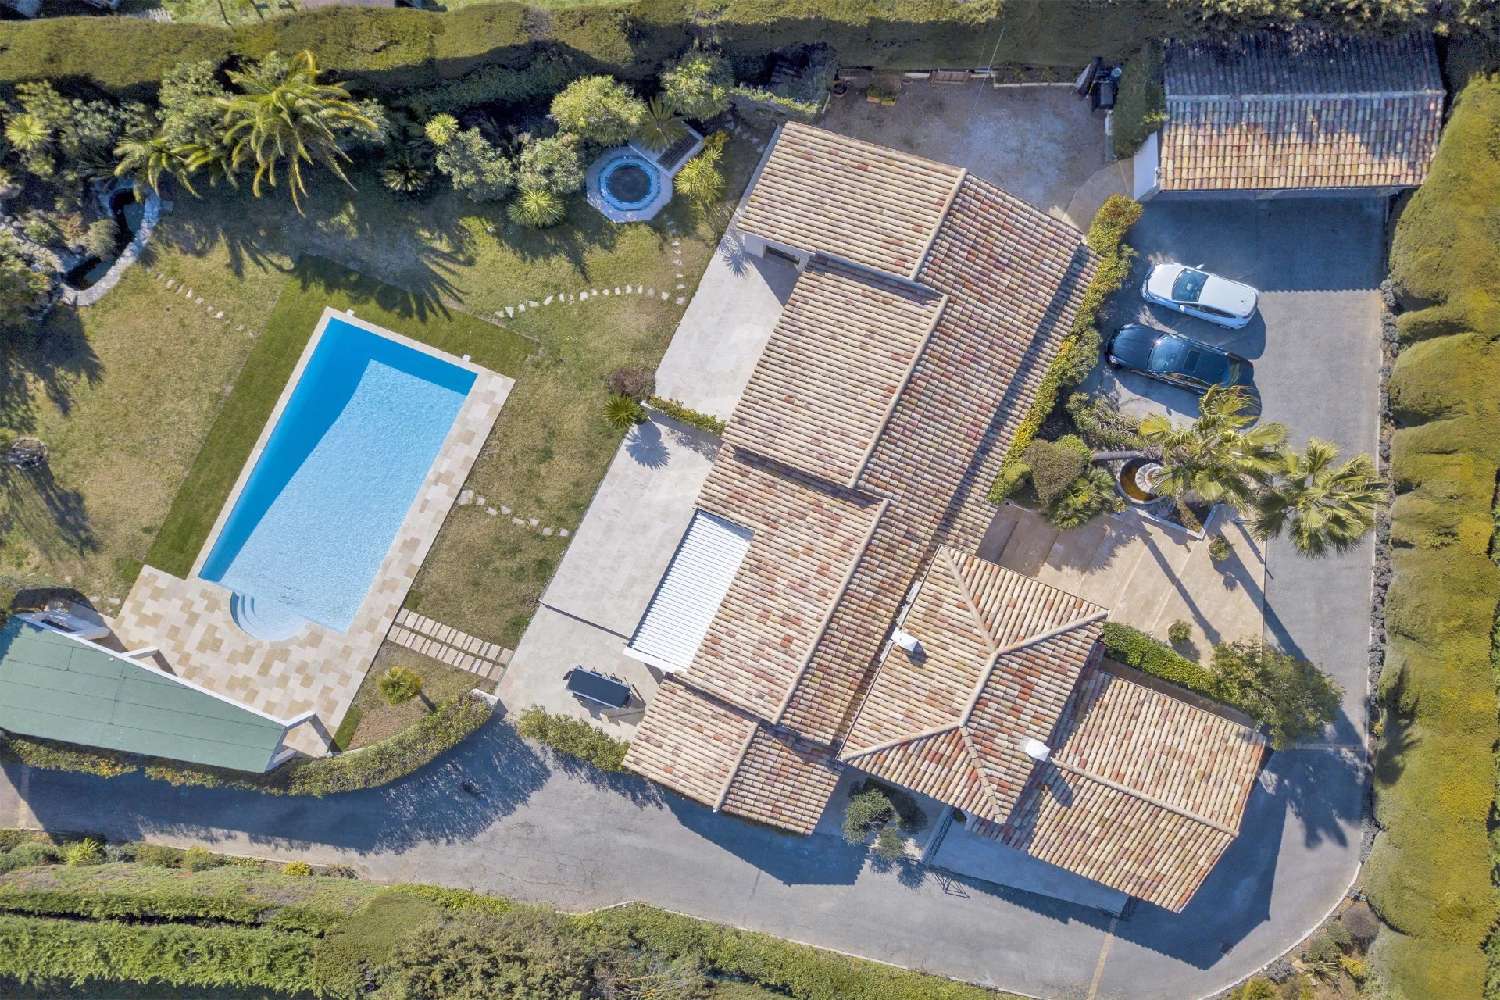  for sale villa Valbonne Alpes-Maritimes 4